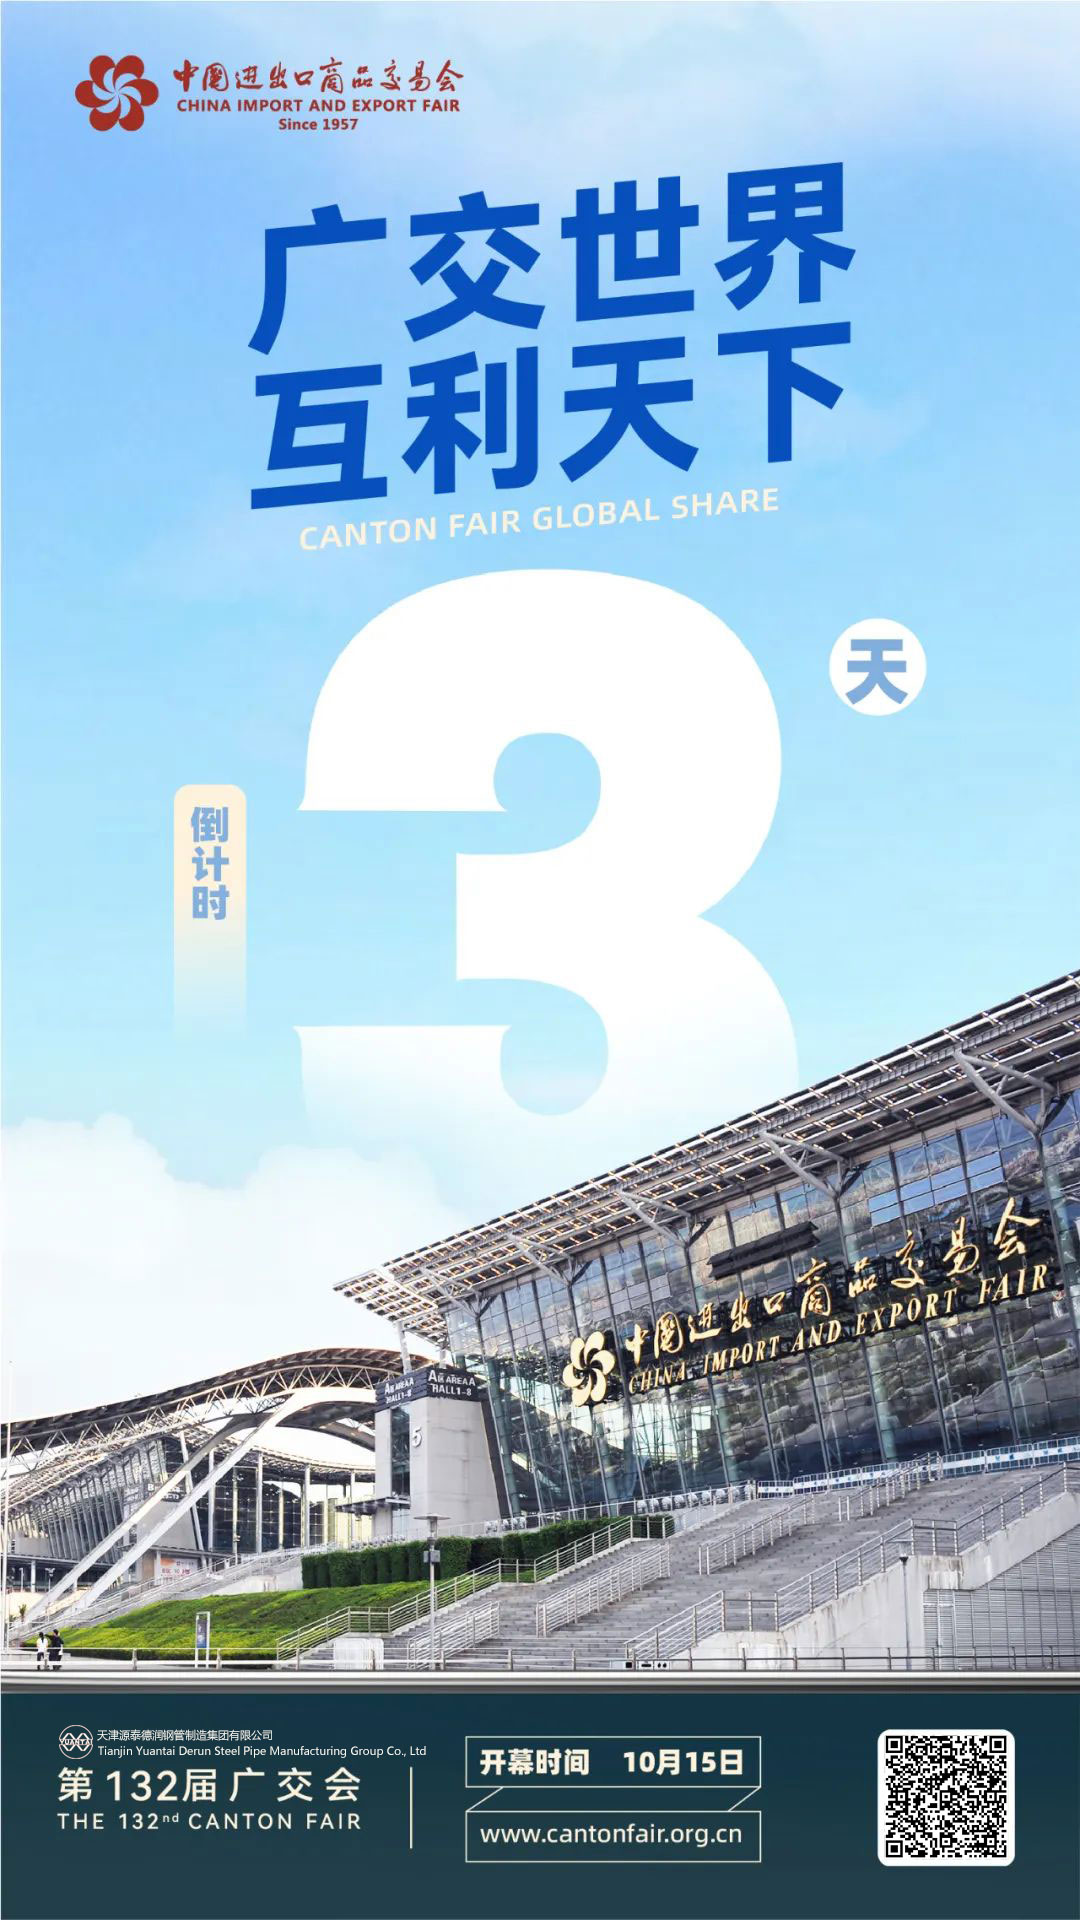 132. Kanton Fuarı 3 günlük geri sayıma girdi – Tianjin Yuantaiderun Steel Pipe Manufacturing Group Co., Ltd